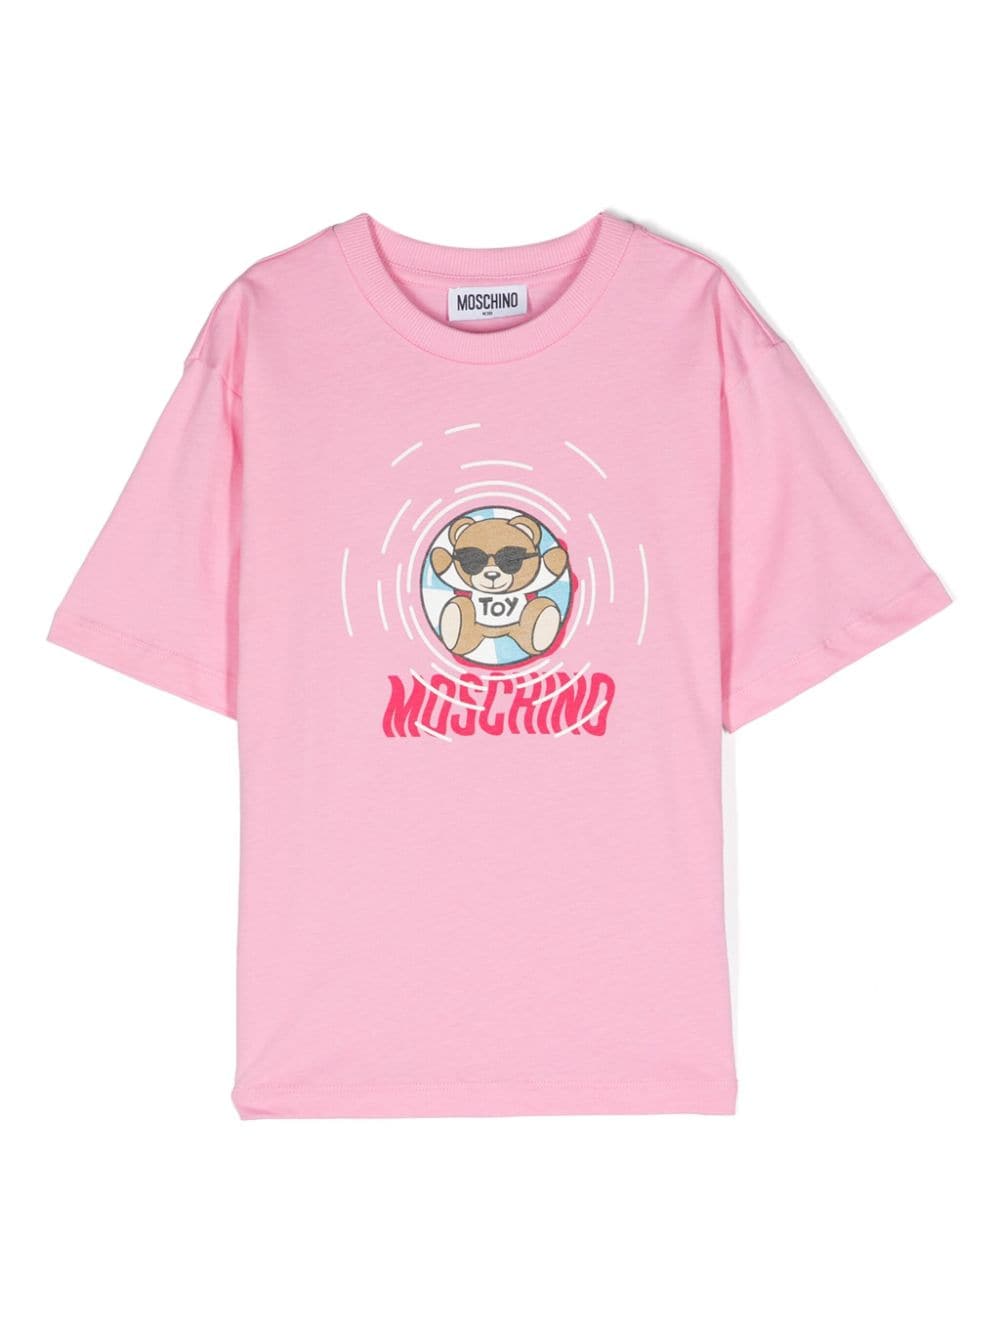 T-shirt fille rose pastel